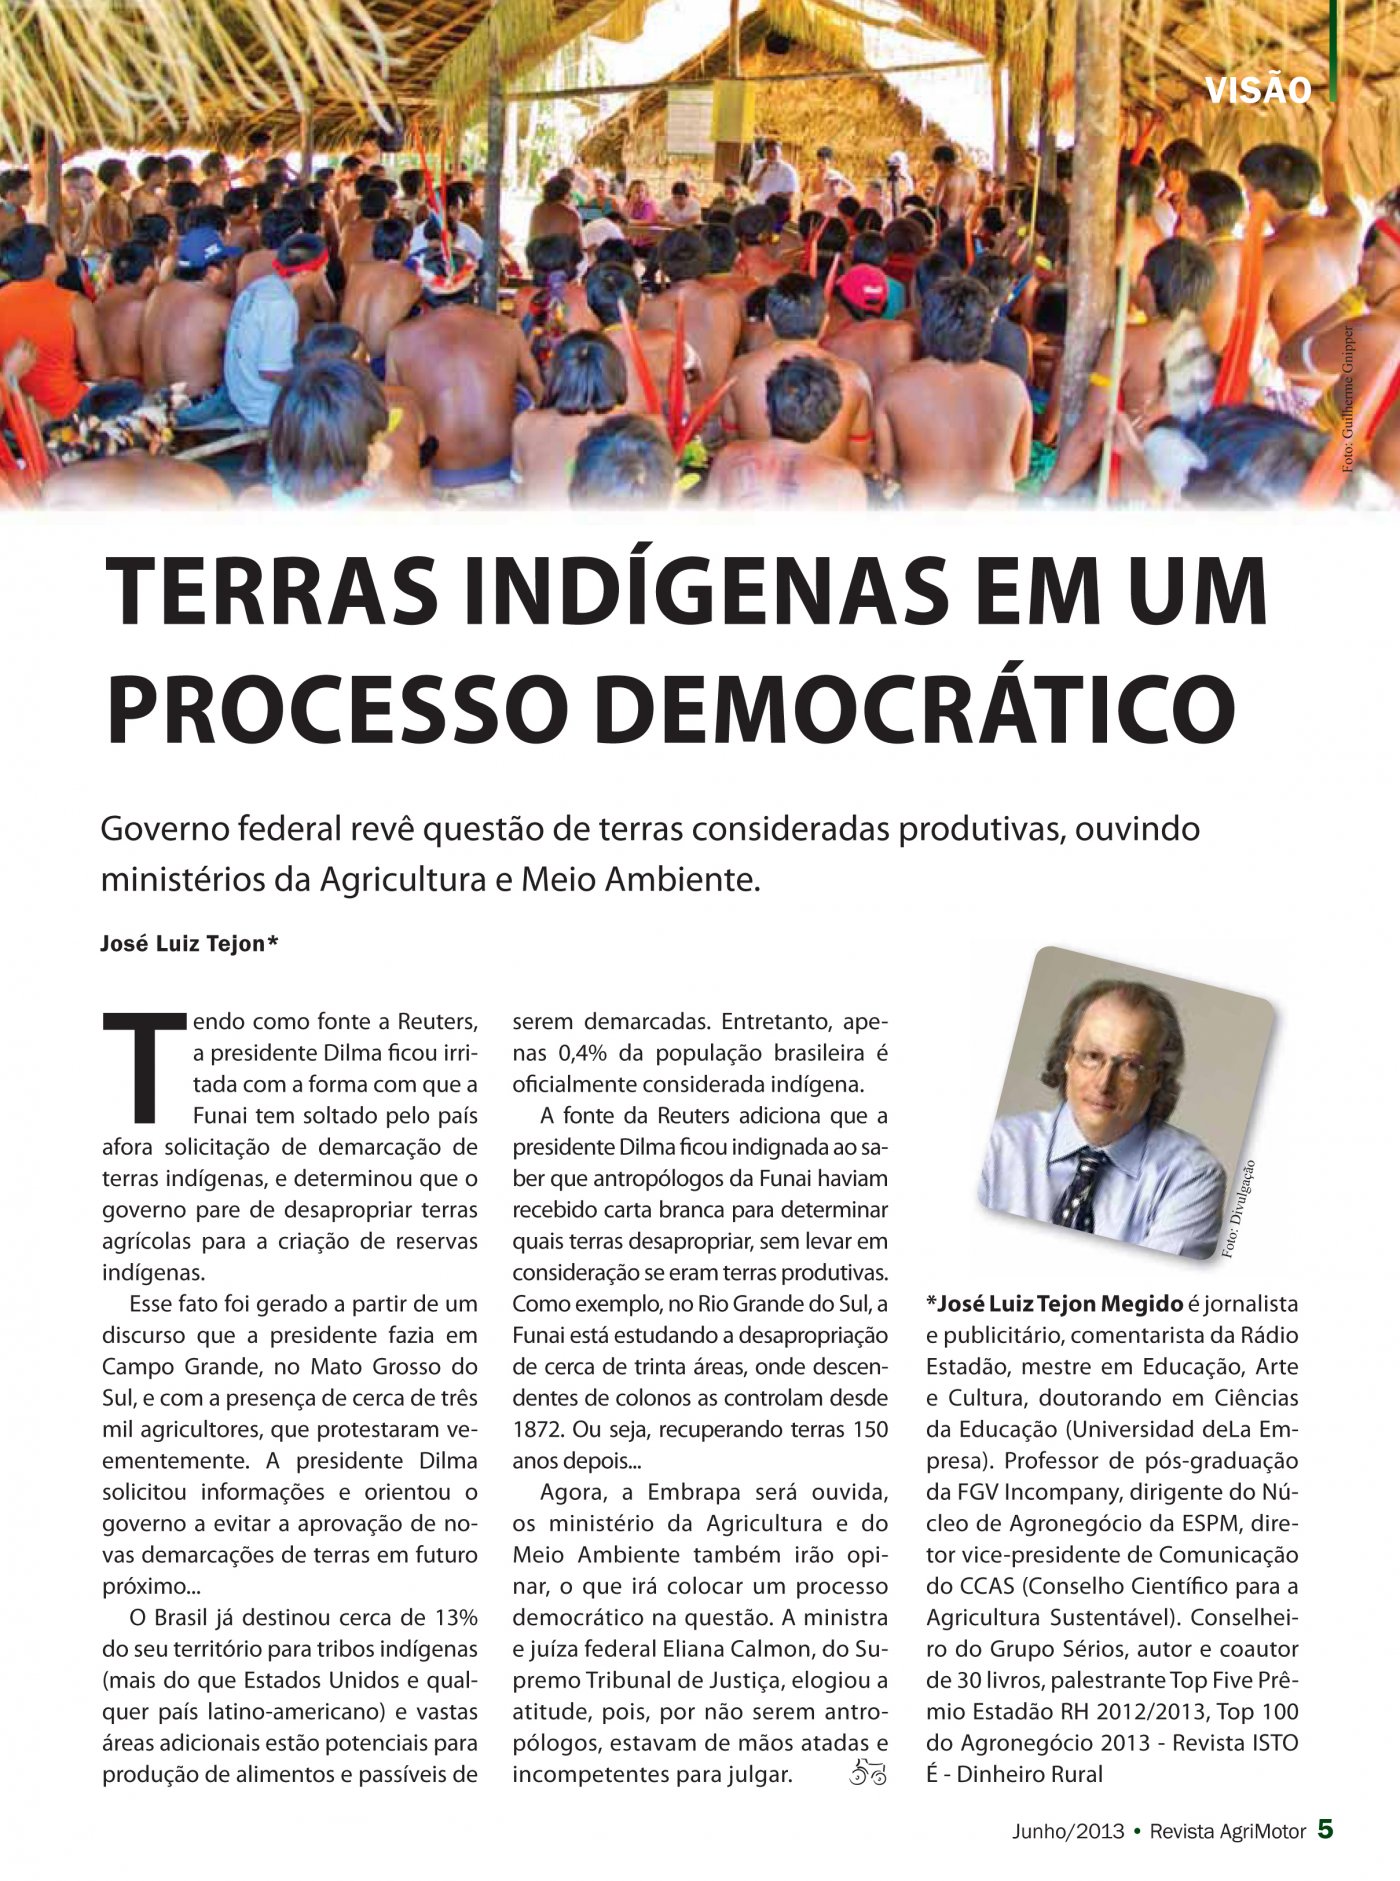 Revista Agrimotor publica artigo de Vice-Presidente de Comunicação do CCAS